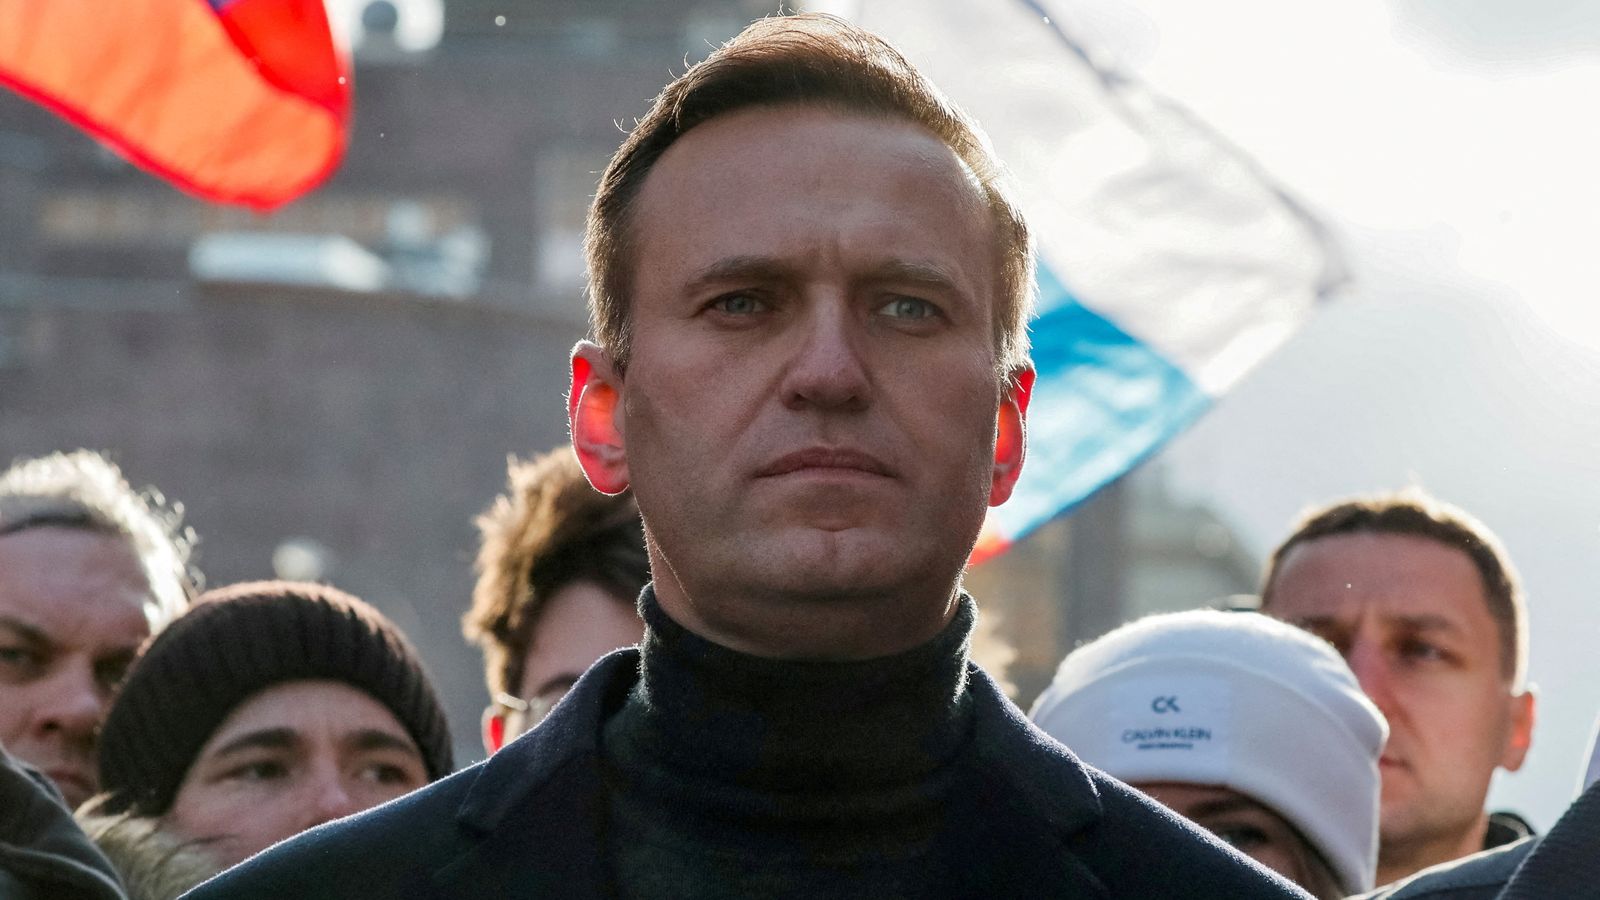 Алексей Навальный: Кремлевский комментатор осужден российским судом за грубое мошенничество и неуважение к суду |  Новости мира